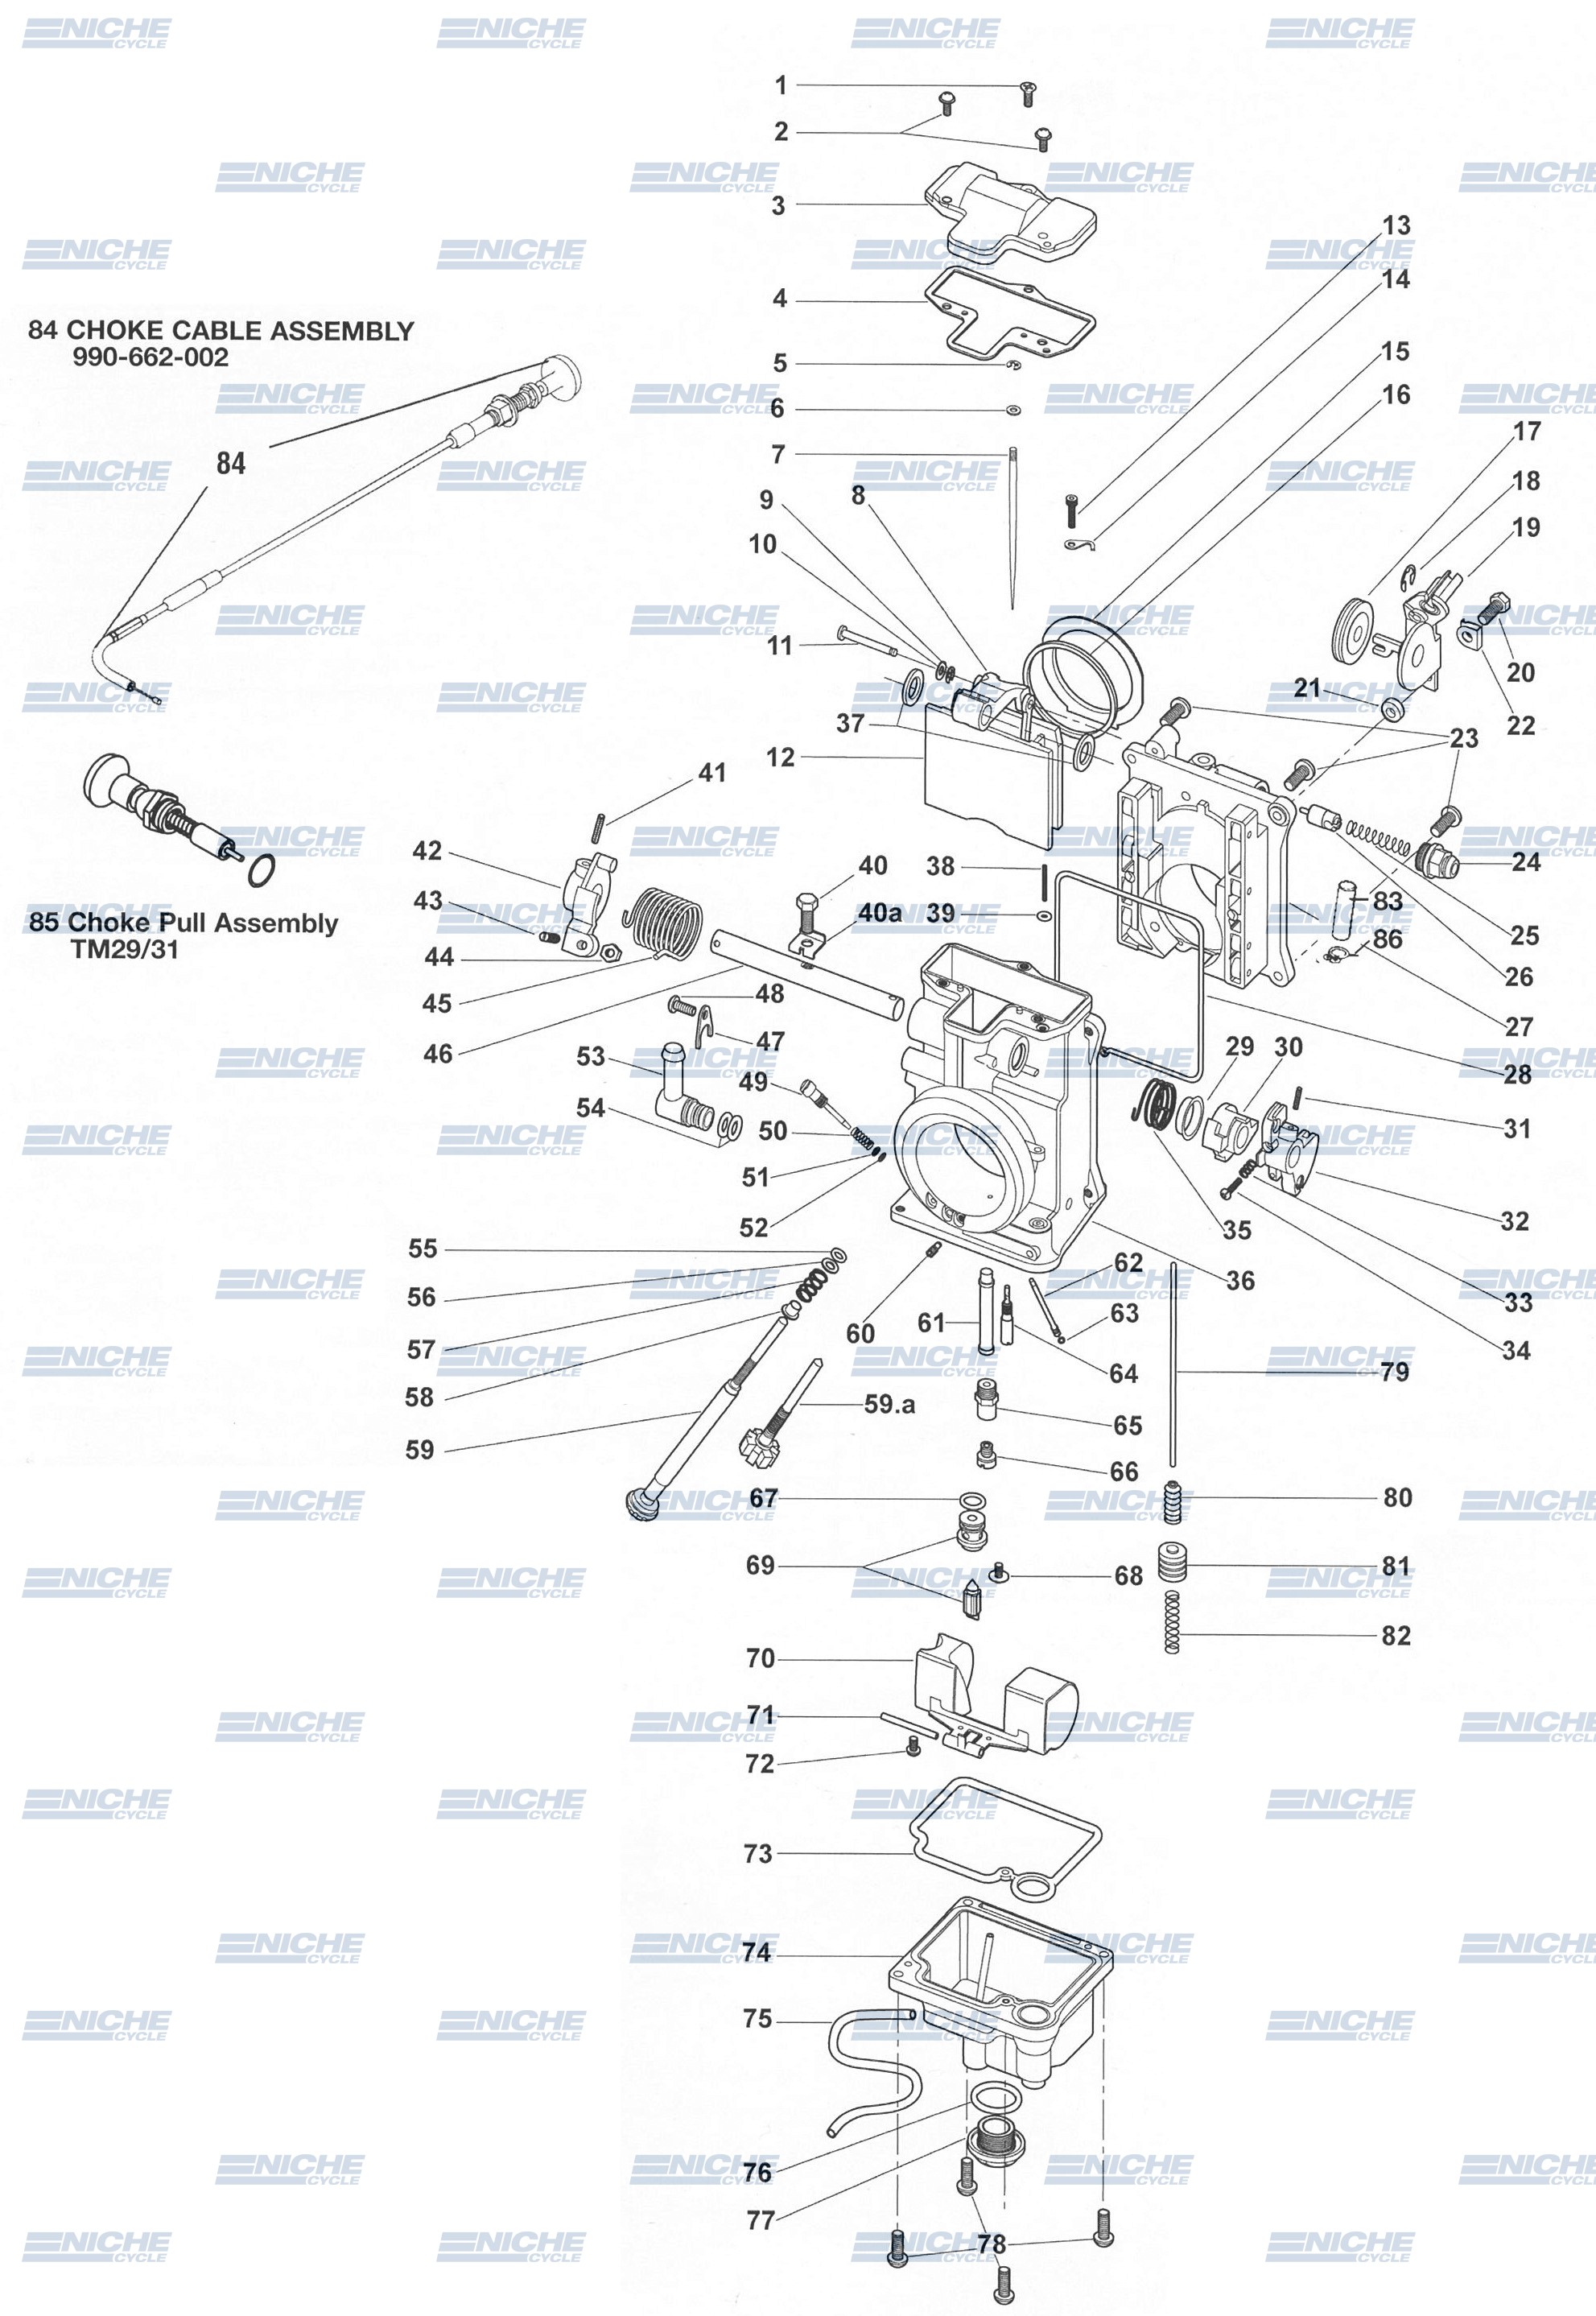 HSR48/Mikuni TM48 Exploded View - Replacement Parts Listing HSR48-TM48_parts_list